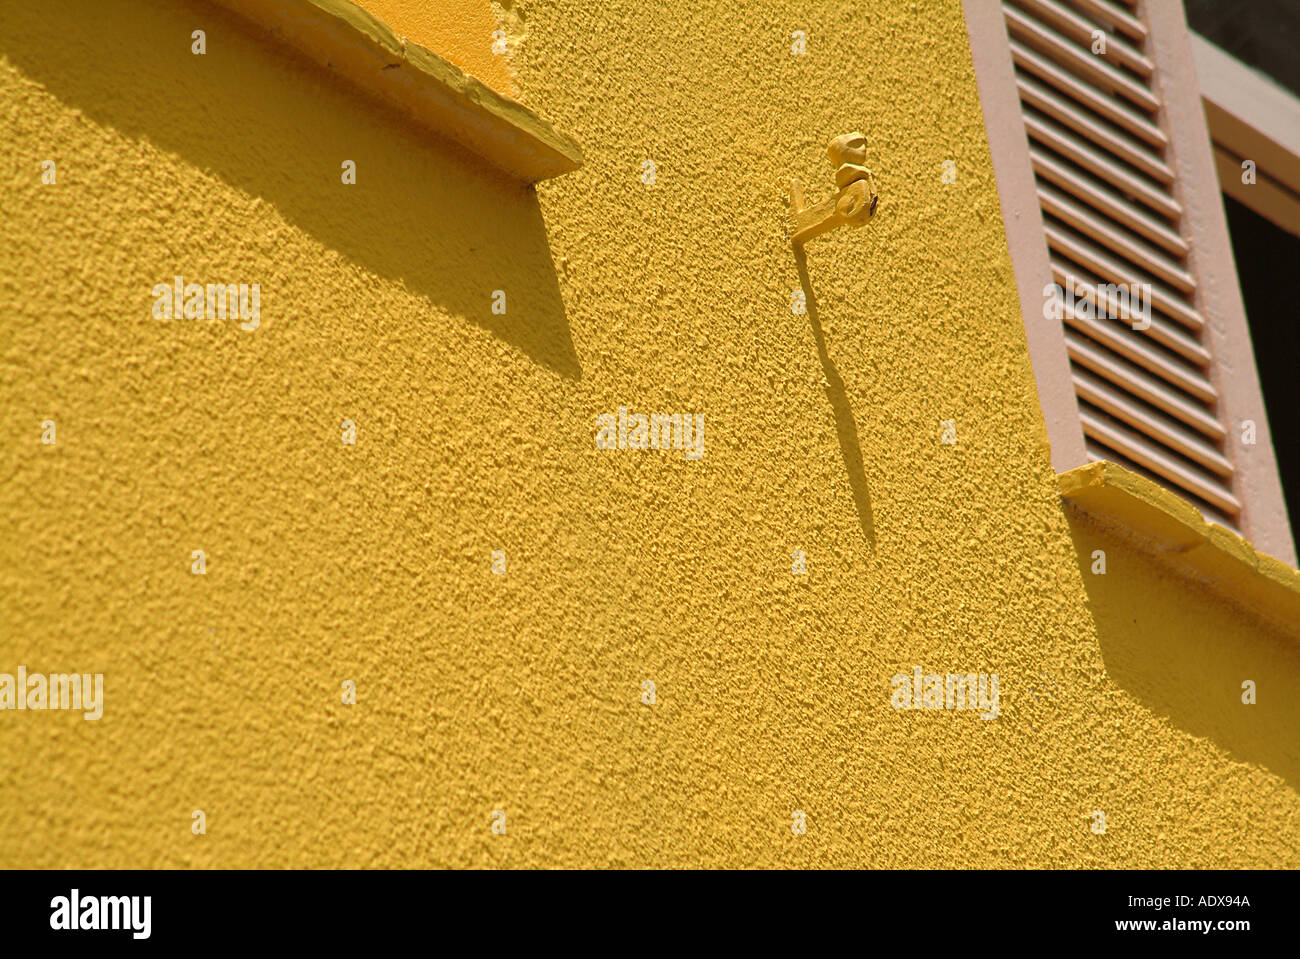 Architettura di persiane alle finestre giallo ocra facciata dettaglio sunny ombre costruzione concept art deco 30 s luminose colorate Foto Stock